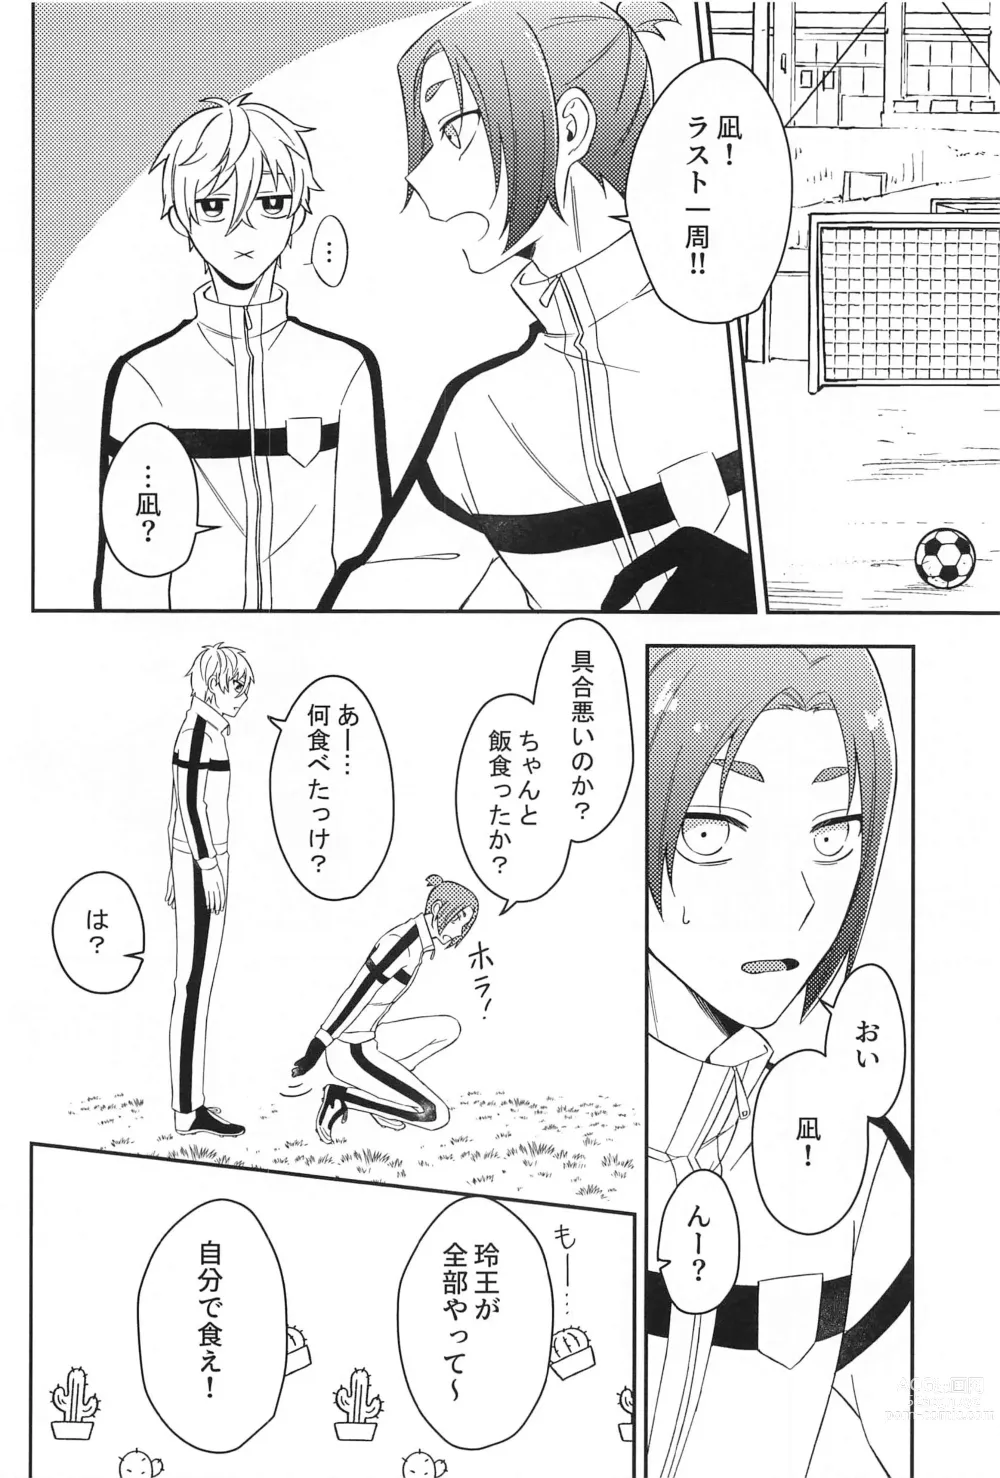 Page 9 of doujinshi Sore ni Namae o Tsukeru nara